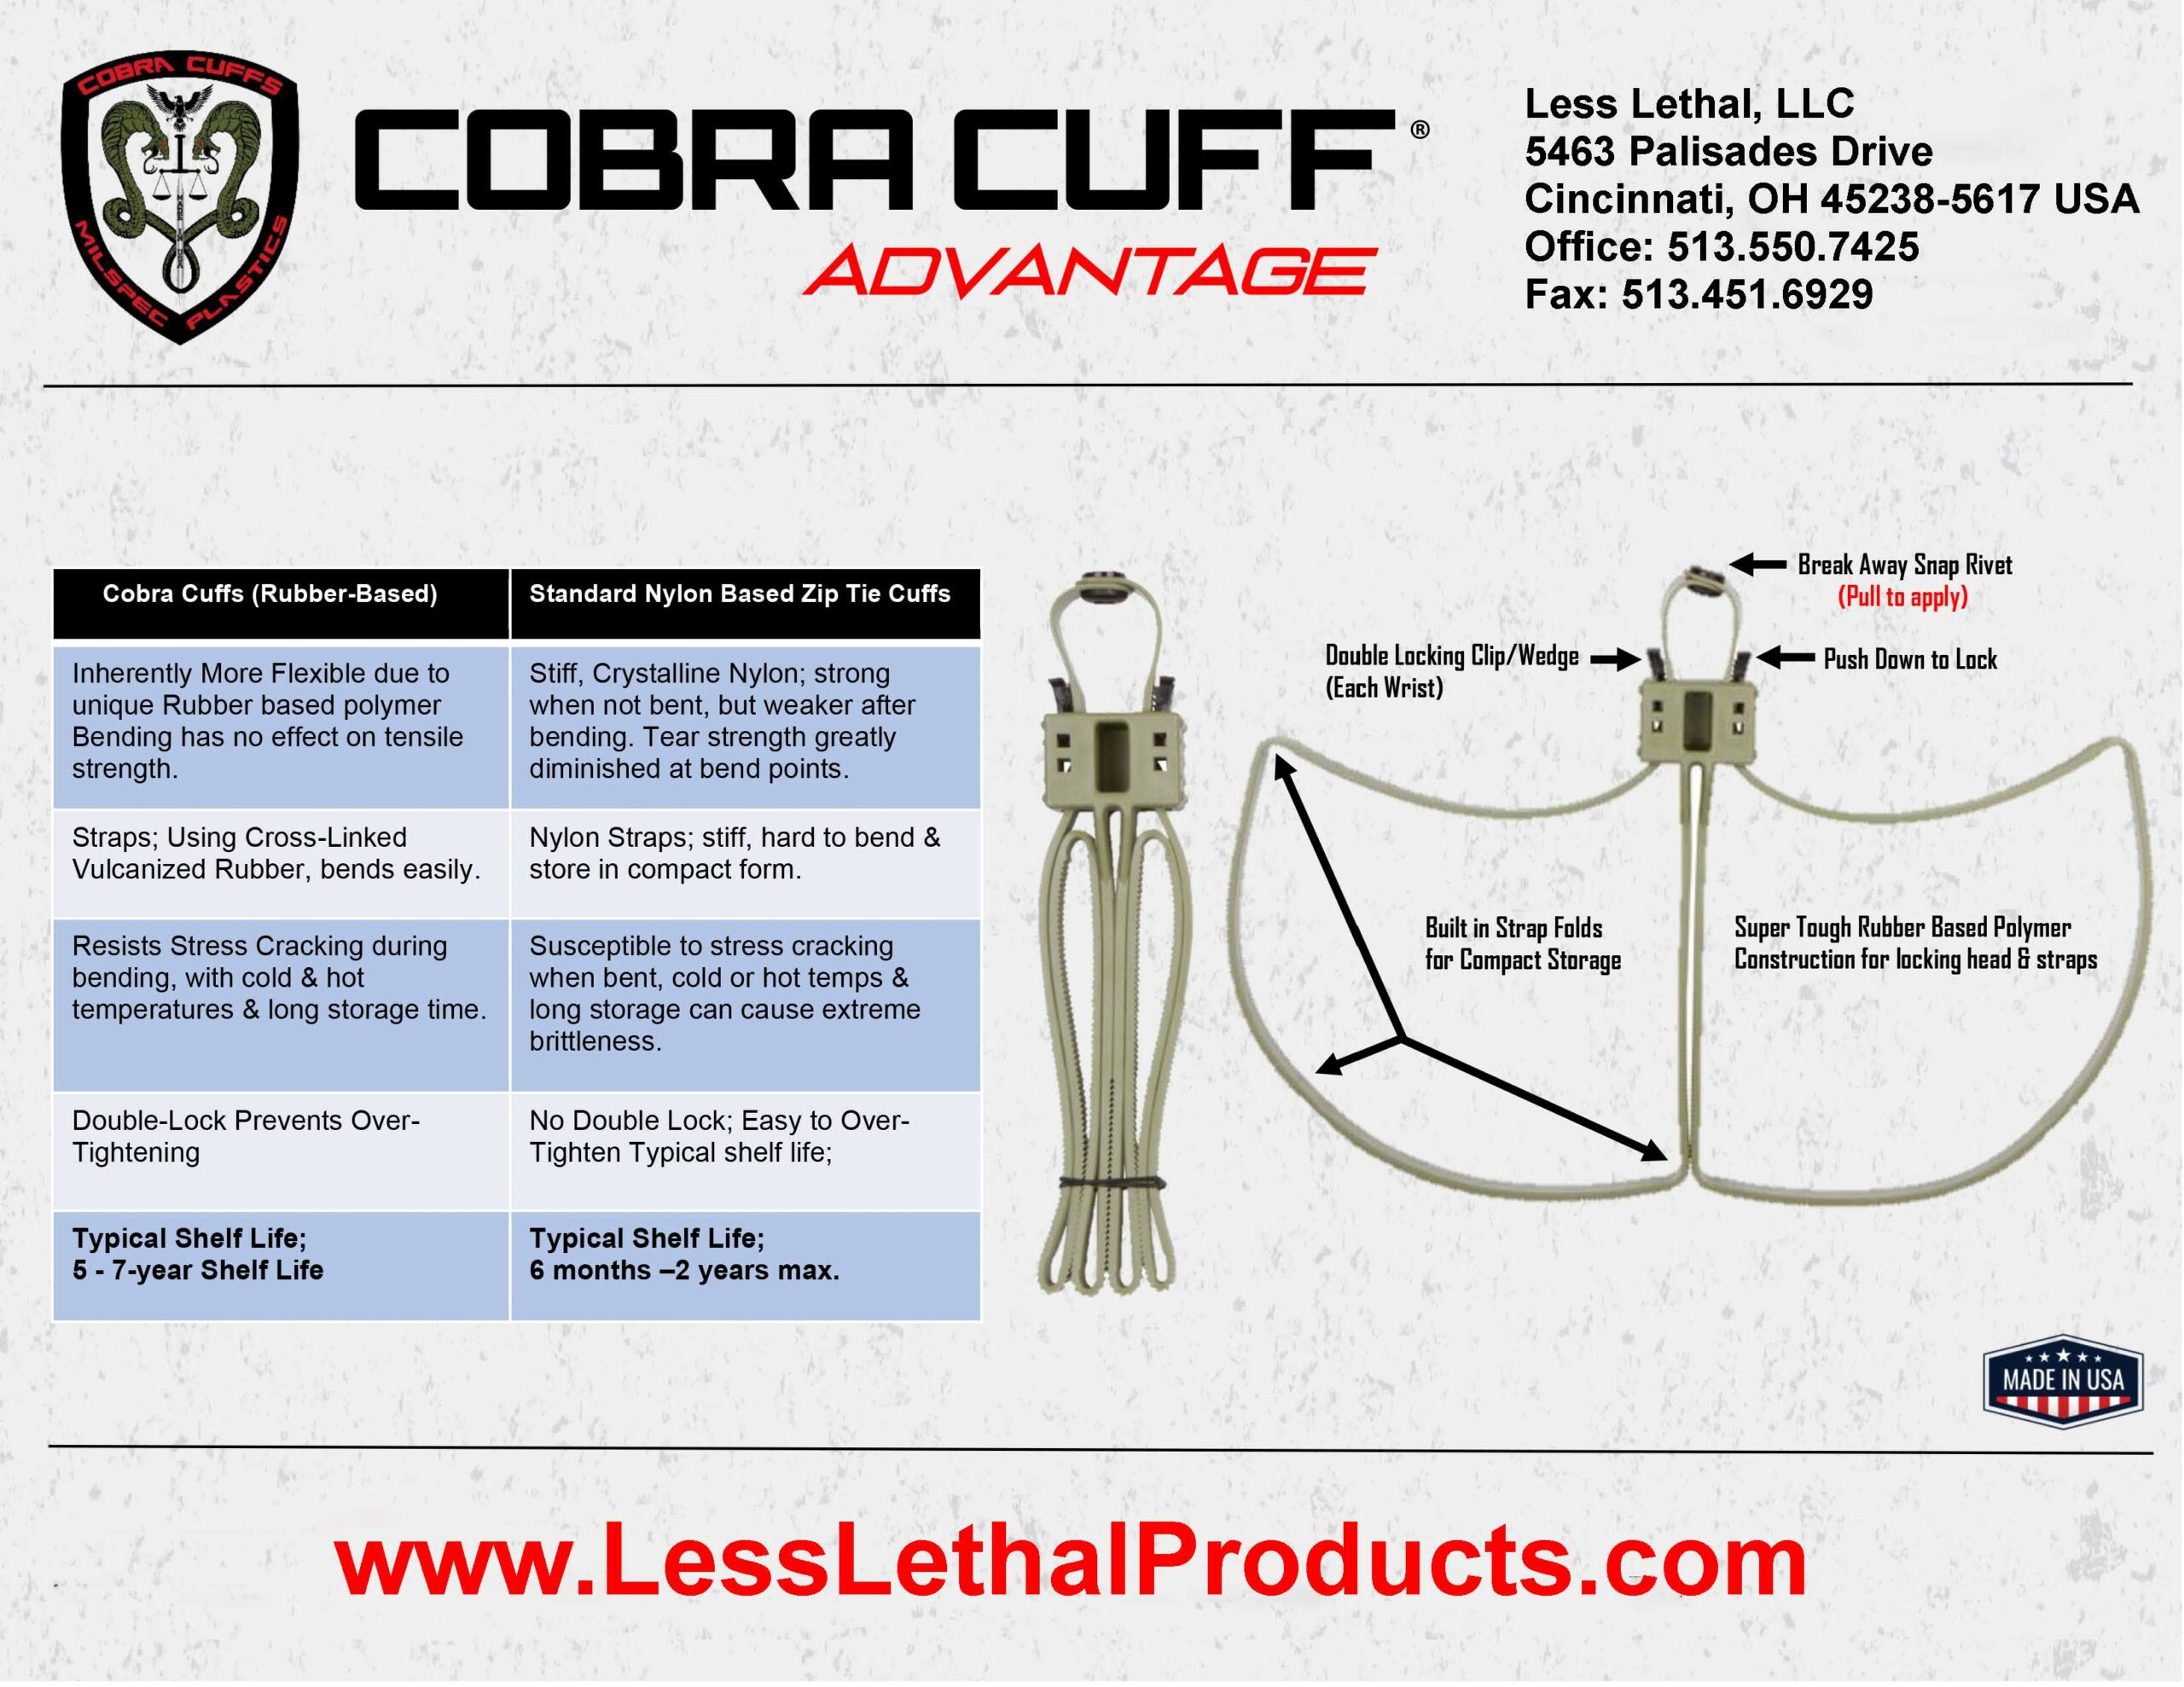 Cobra Cuff Advantage click for PDF